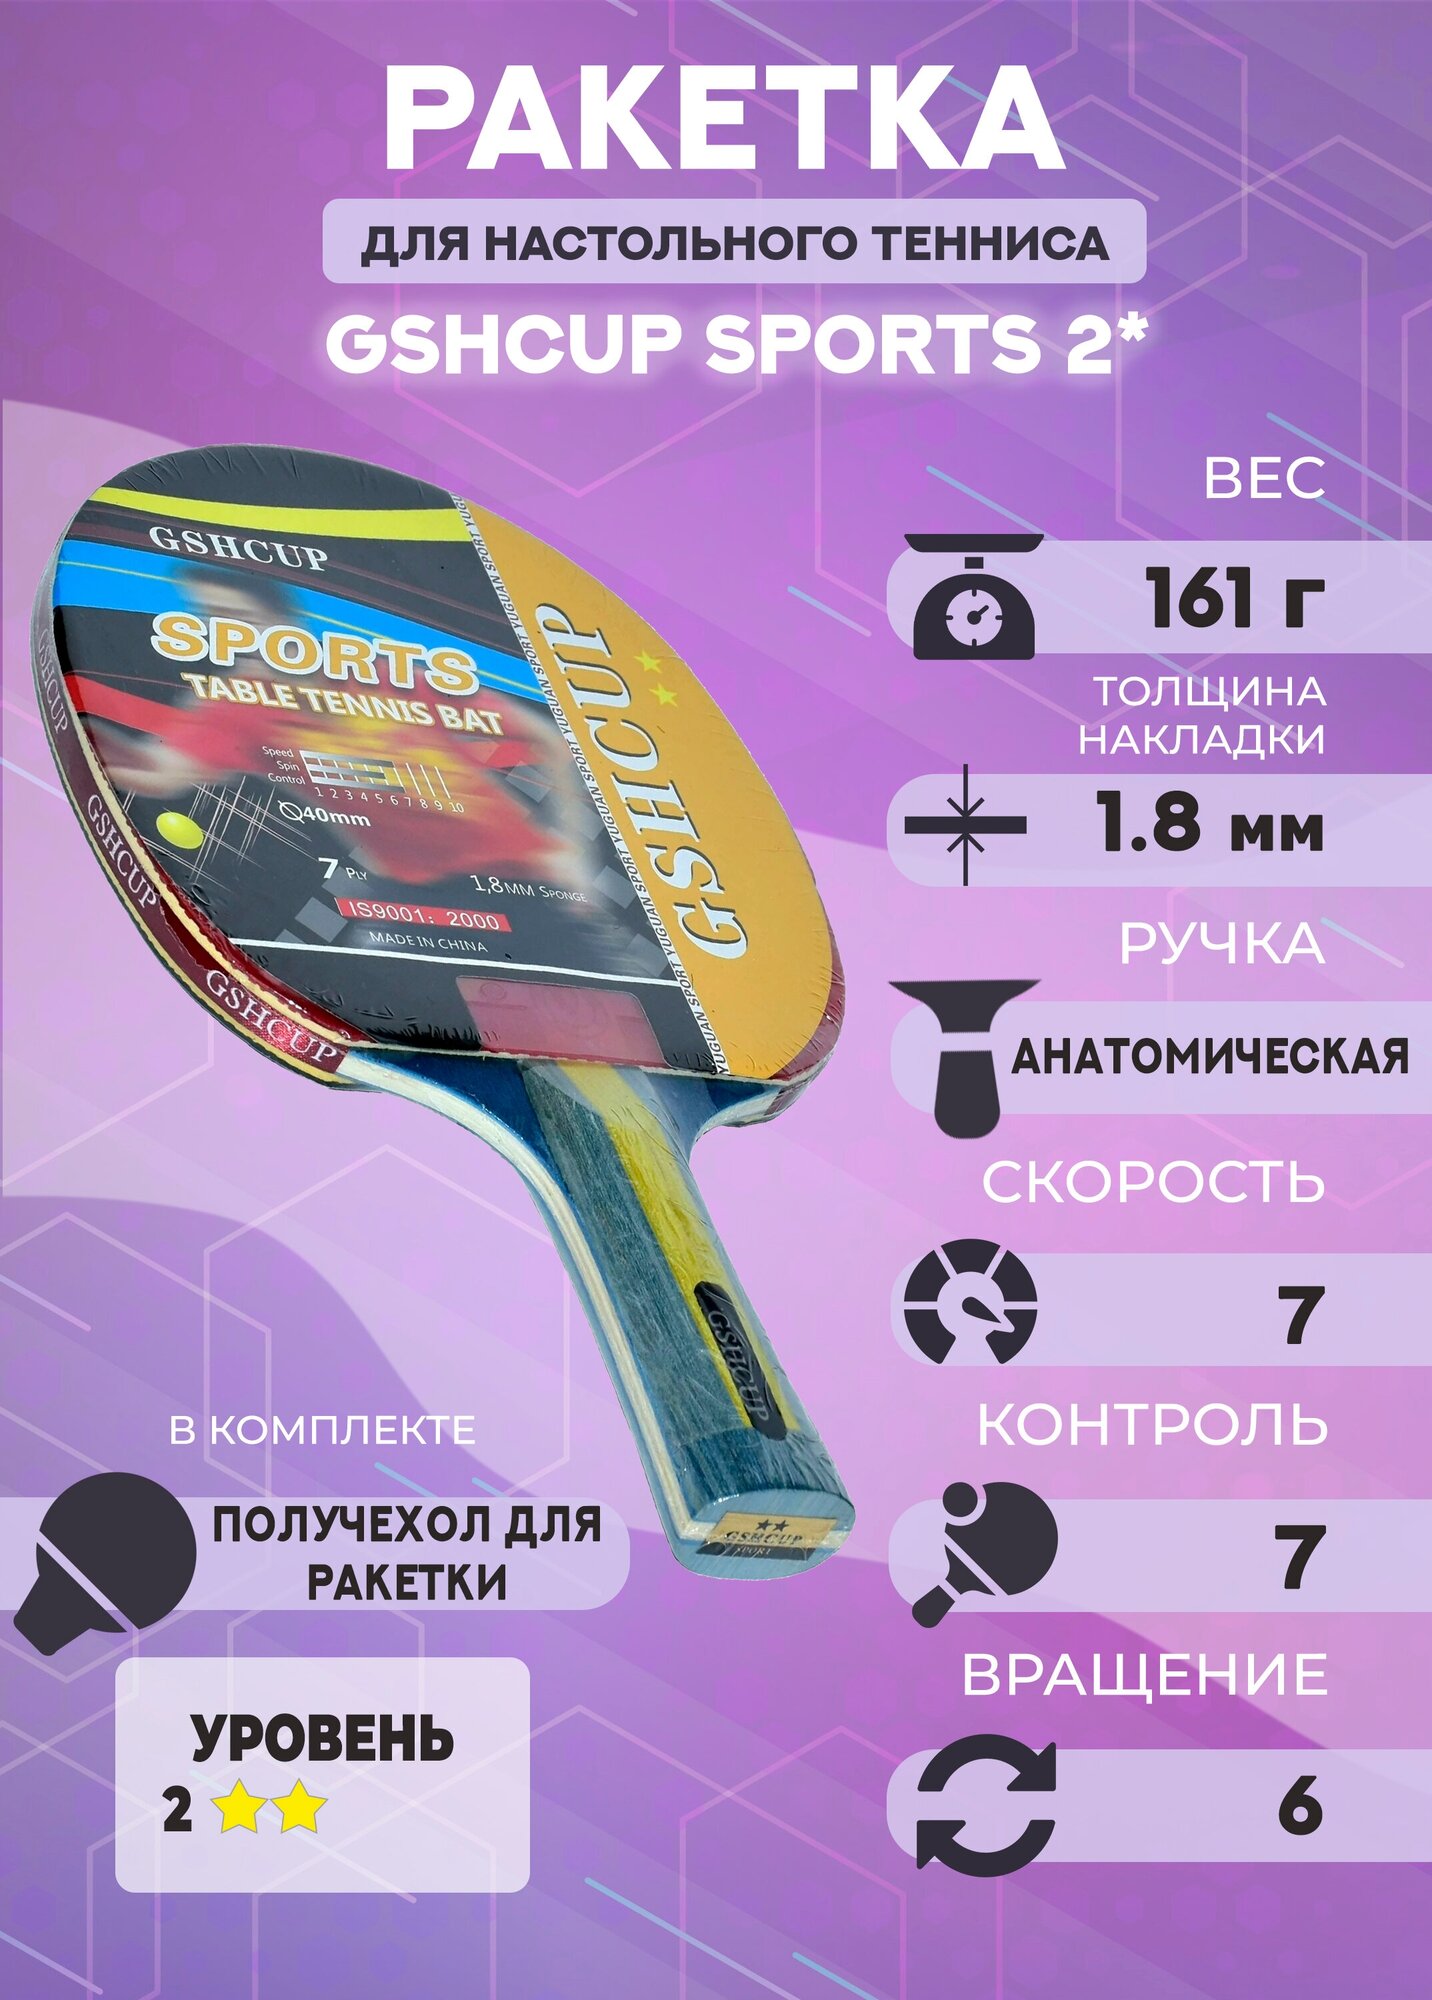 Ракетка для настольного тенниса GSHCUP 2* в получехле